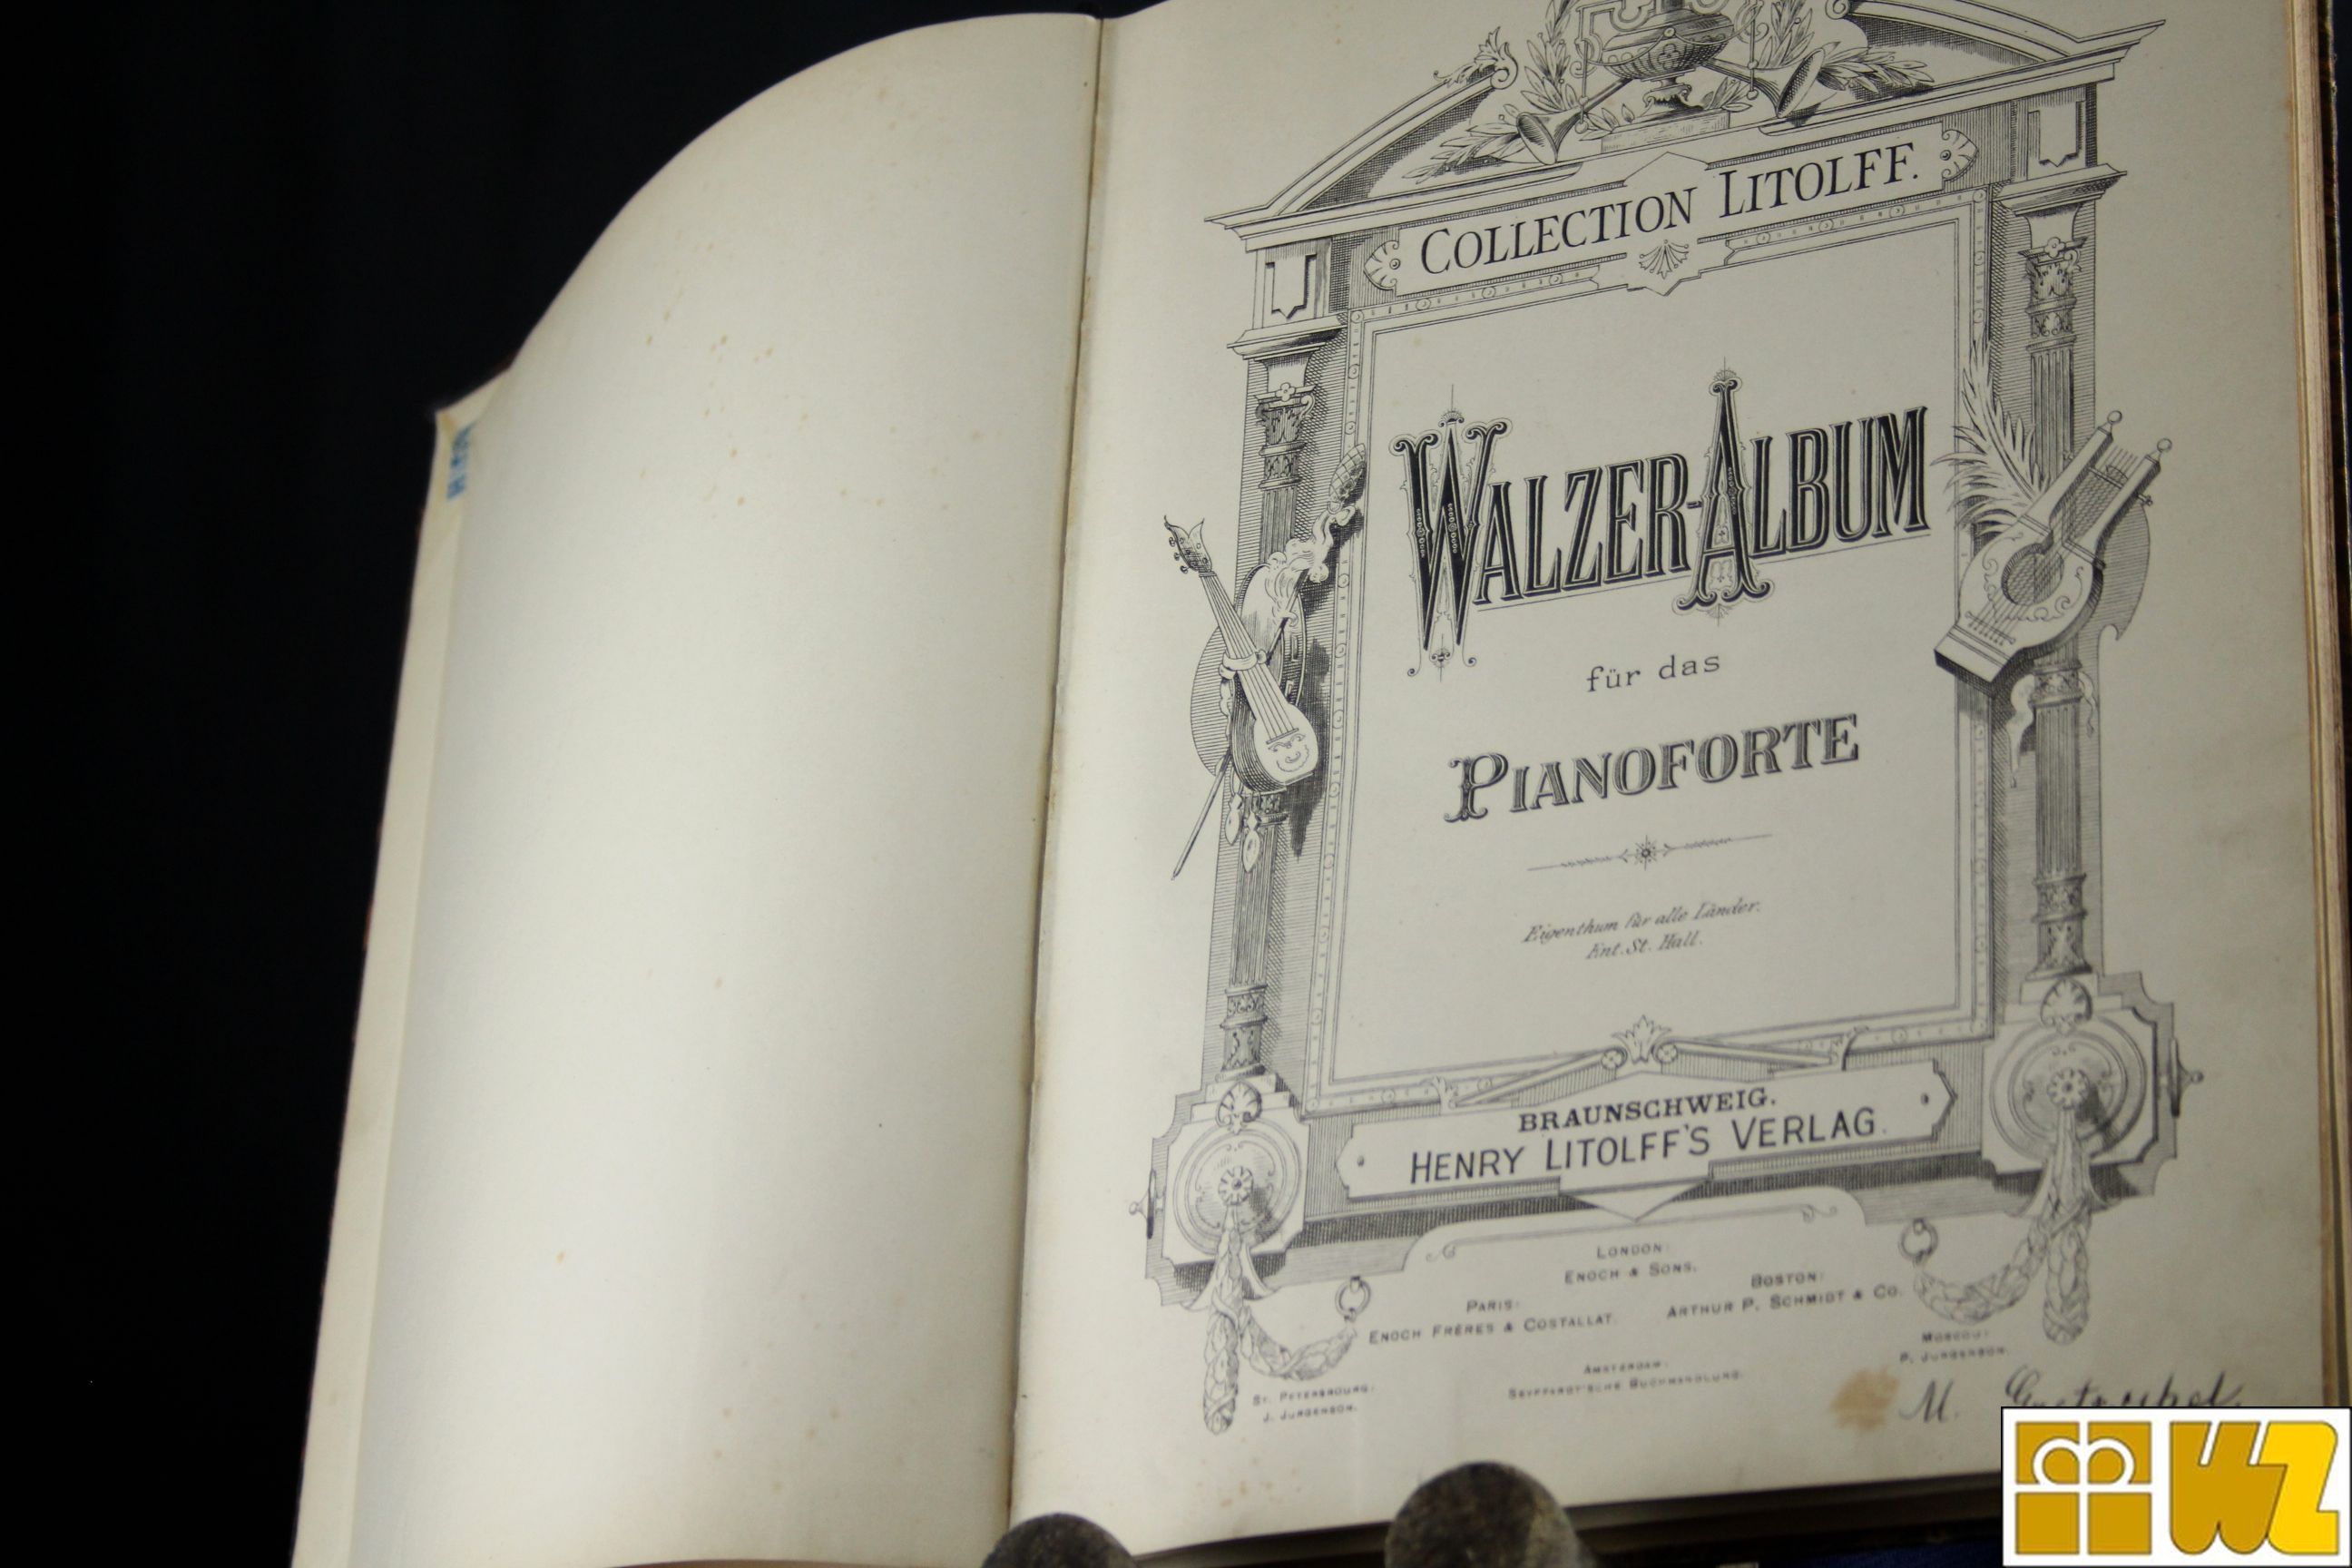 Collection Litolff No. 1577 - Walzer-Album für das Pianoforte, antiquarisch